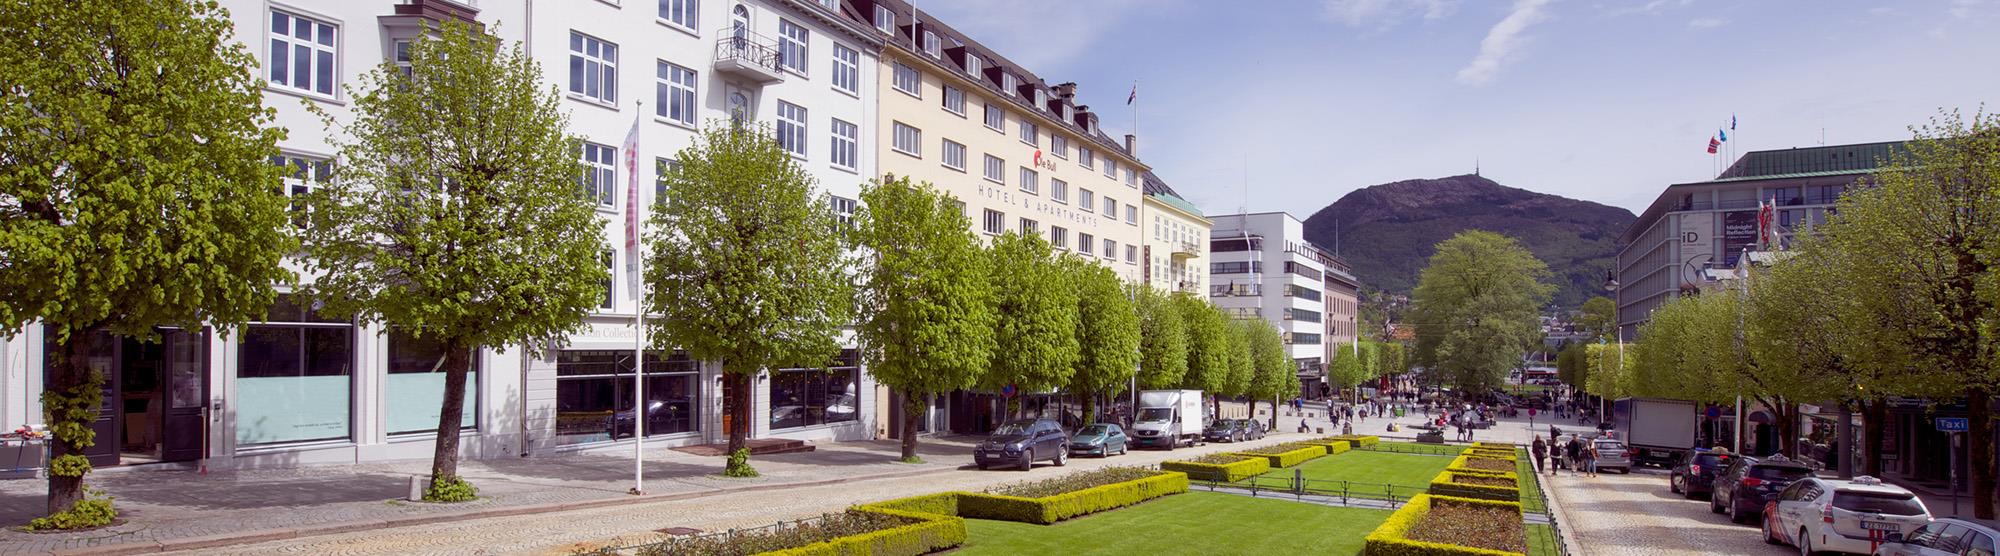 Hotell i Bergen sentrum